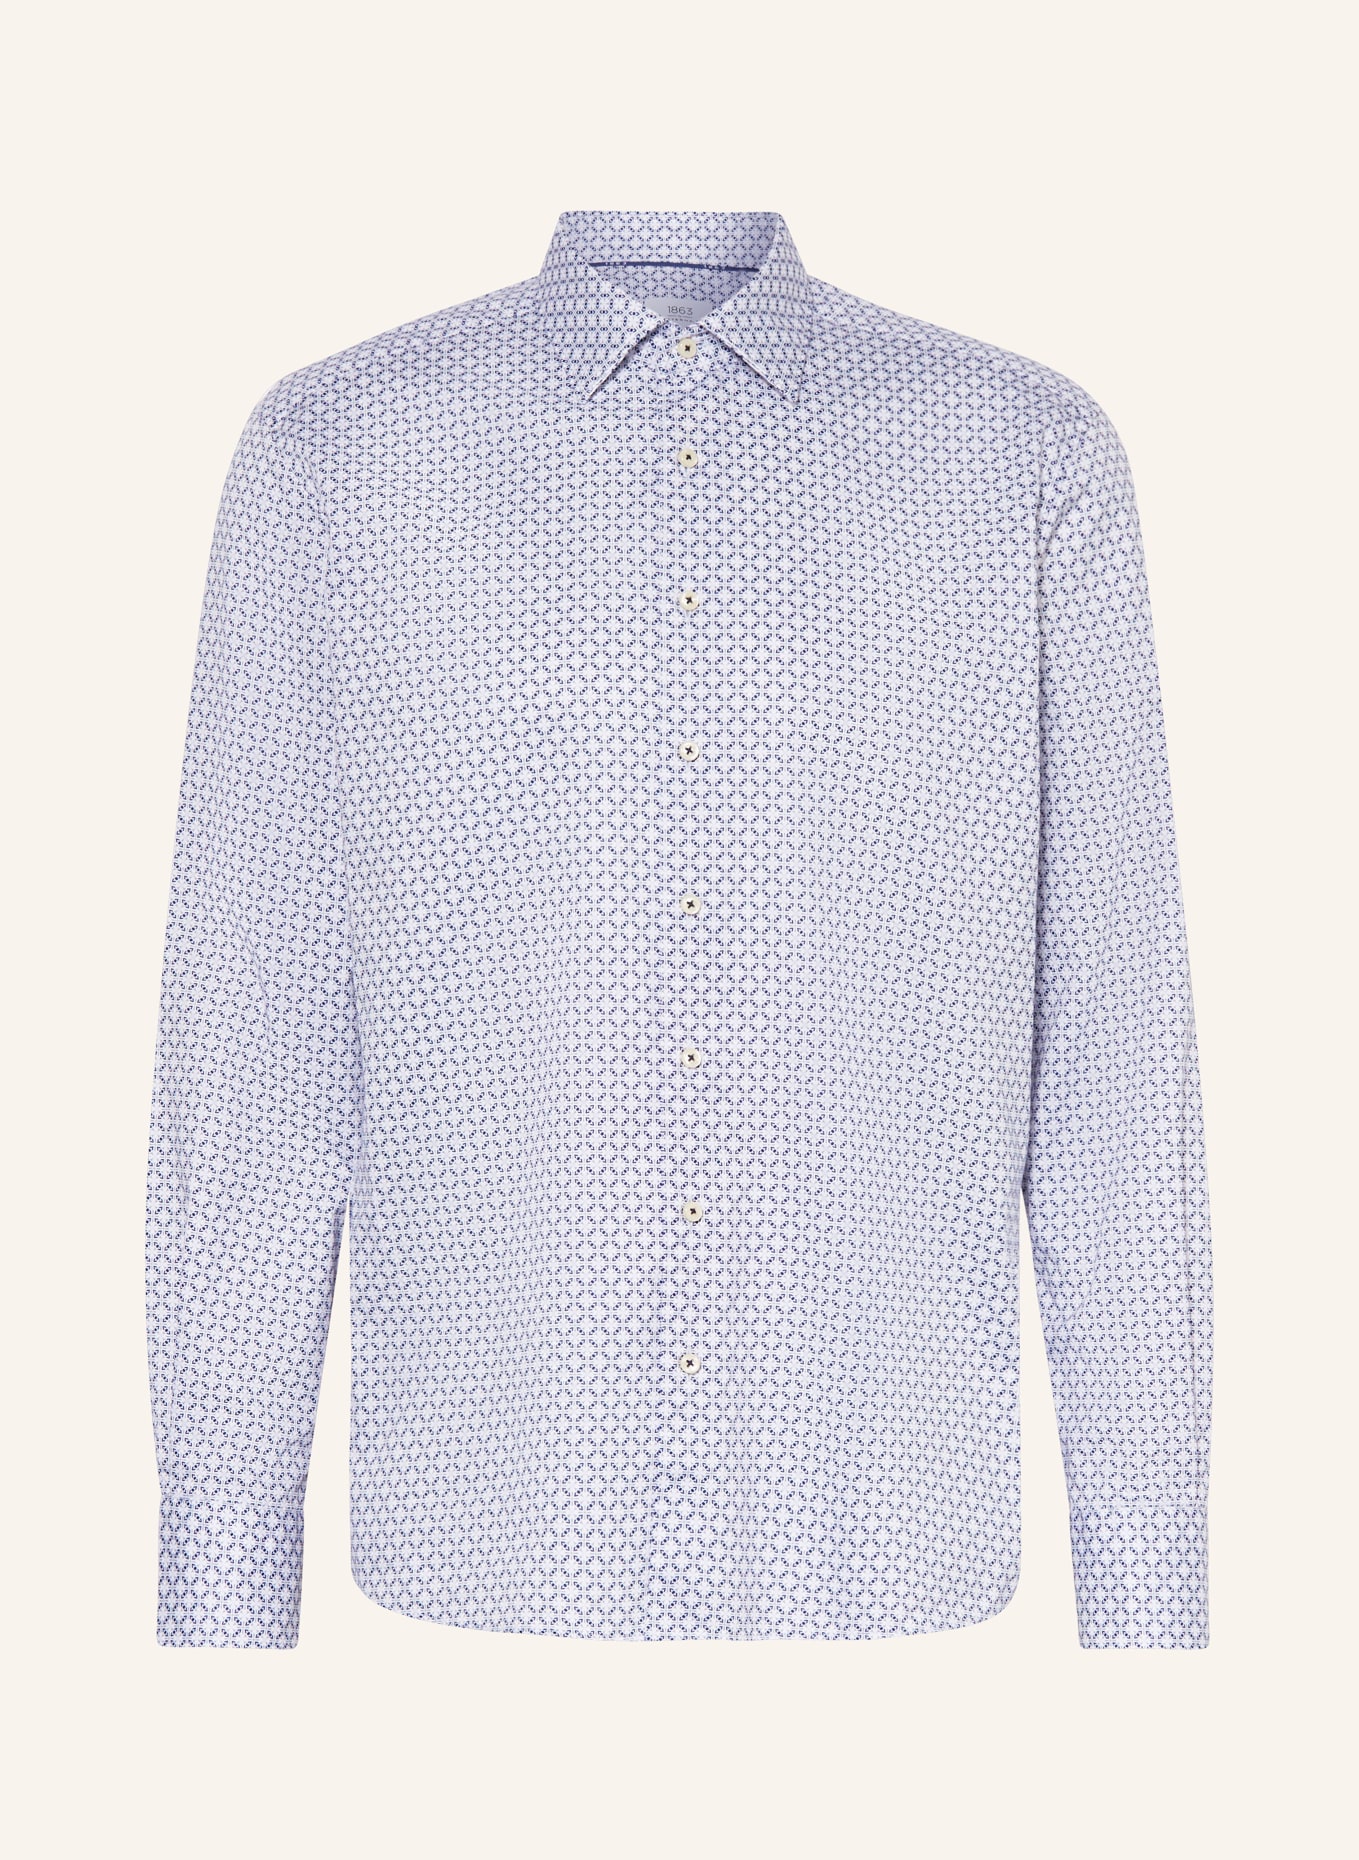 ETERNA 1863 Shirt modern fit, Color: DARK BLUE/ WHITE/ LIGHT GRAY (Image 1)